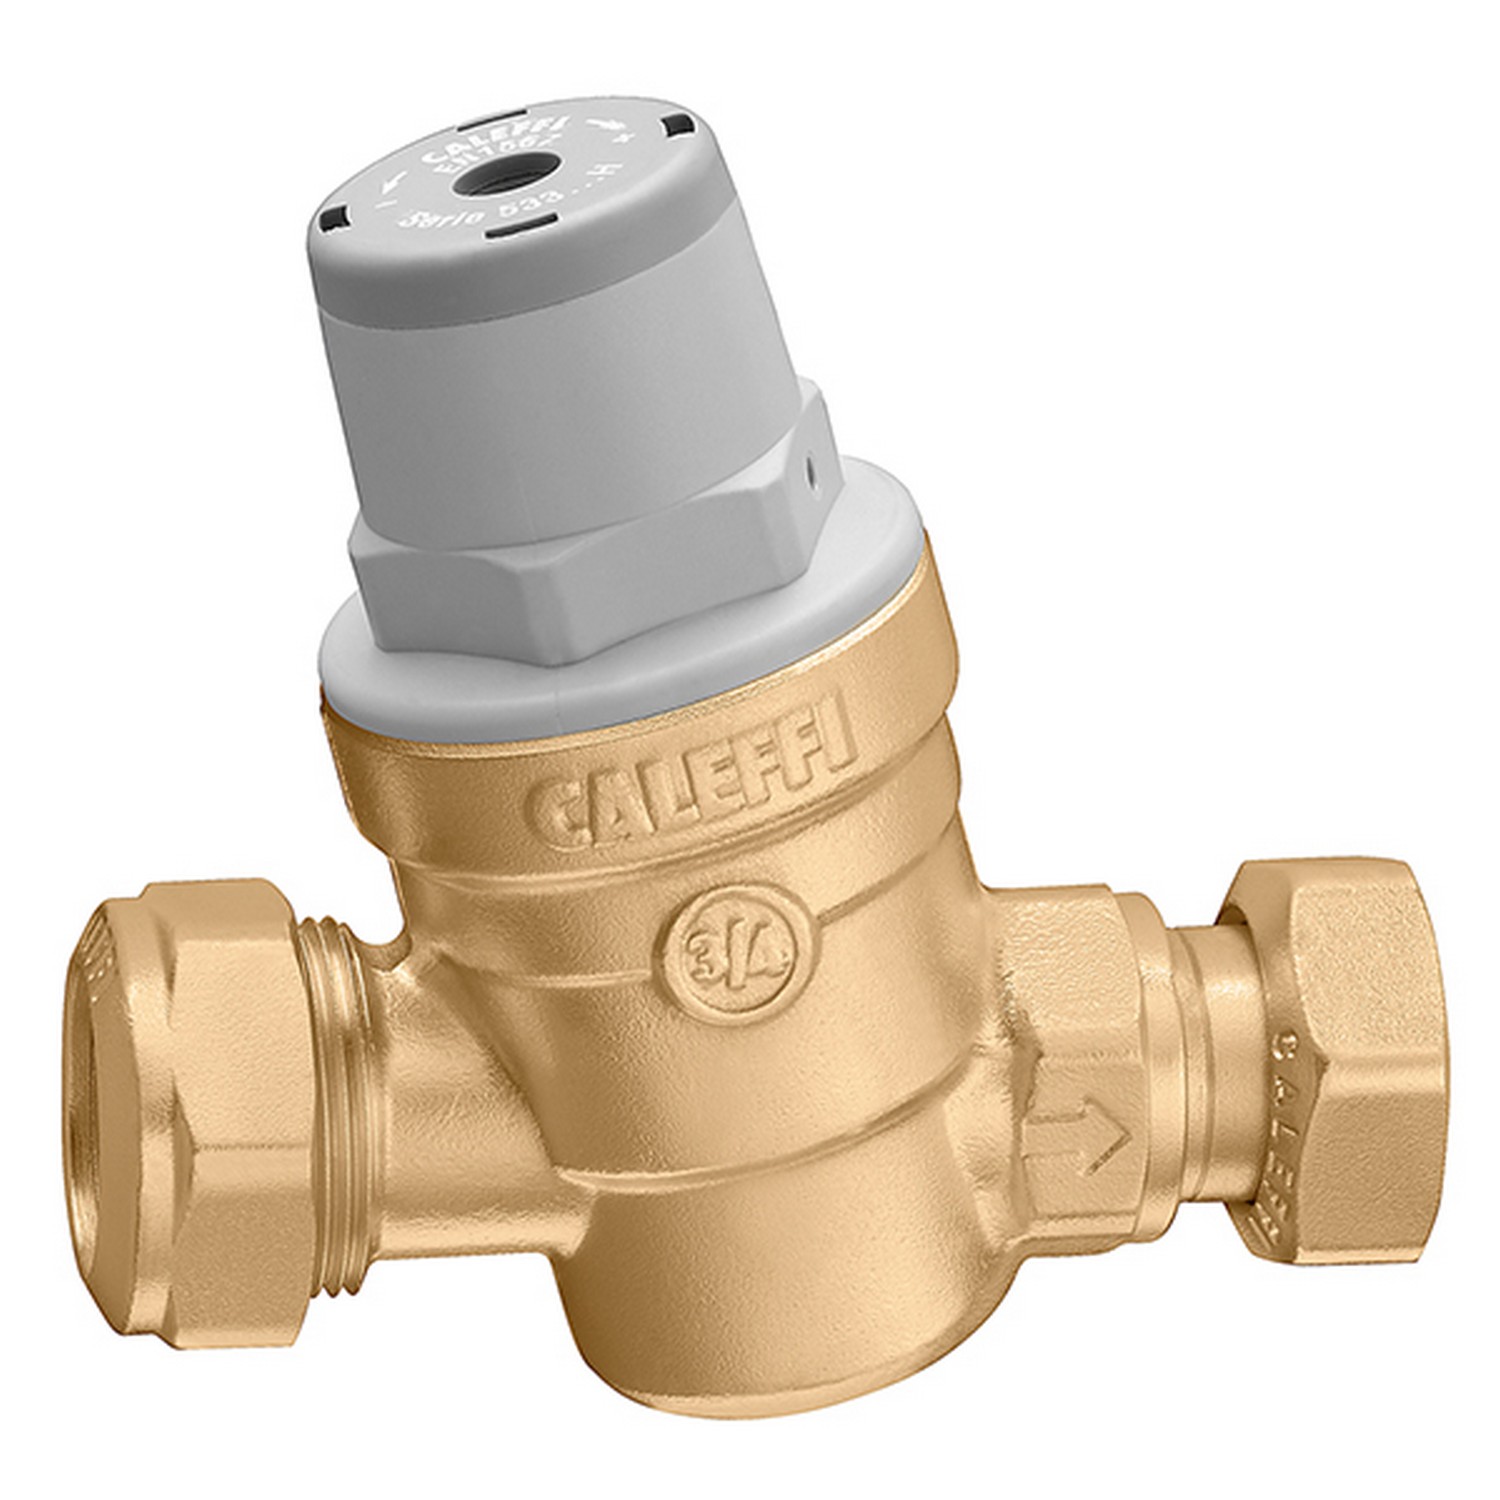 Редуктор давления Caleffi для воды Caleffi 533159H